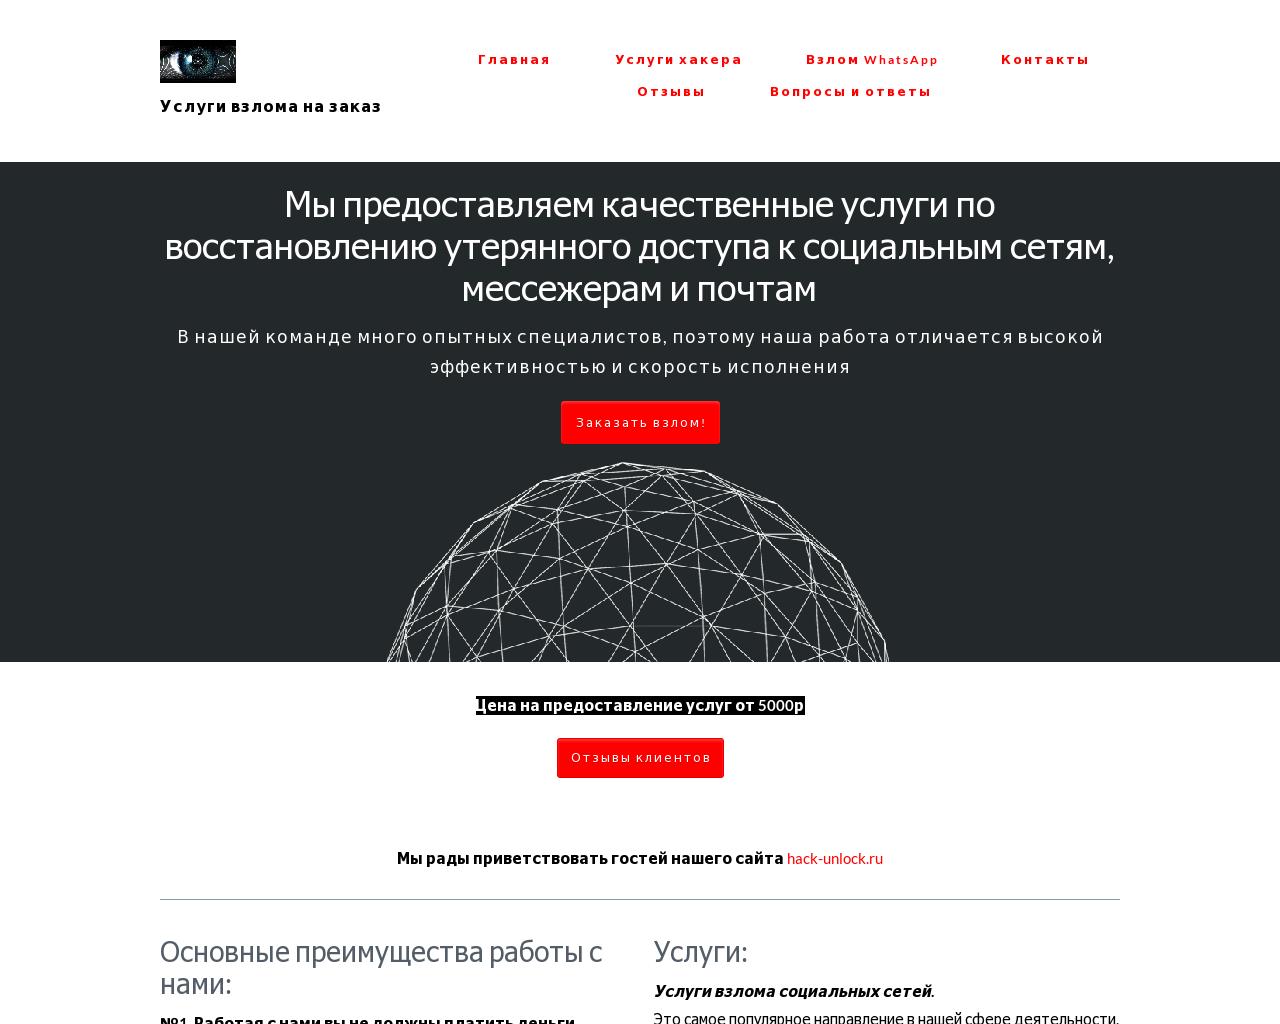 Изображение сайта hack-unlock.ru в разрешении 1280x1024